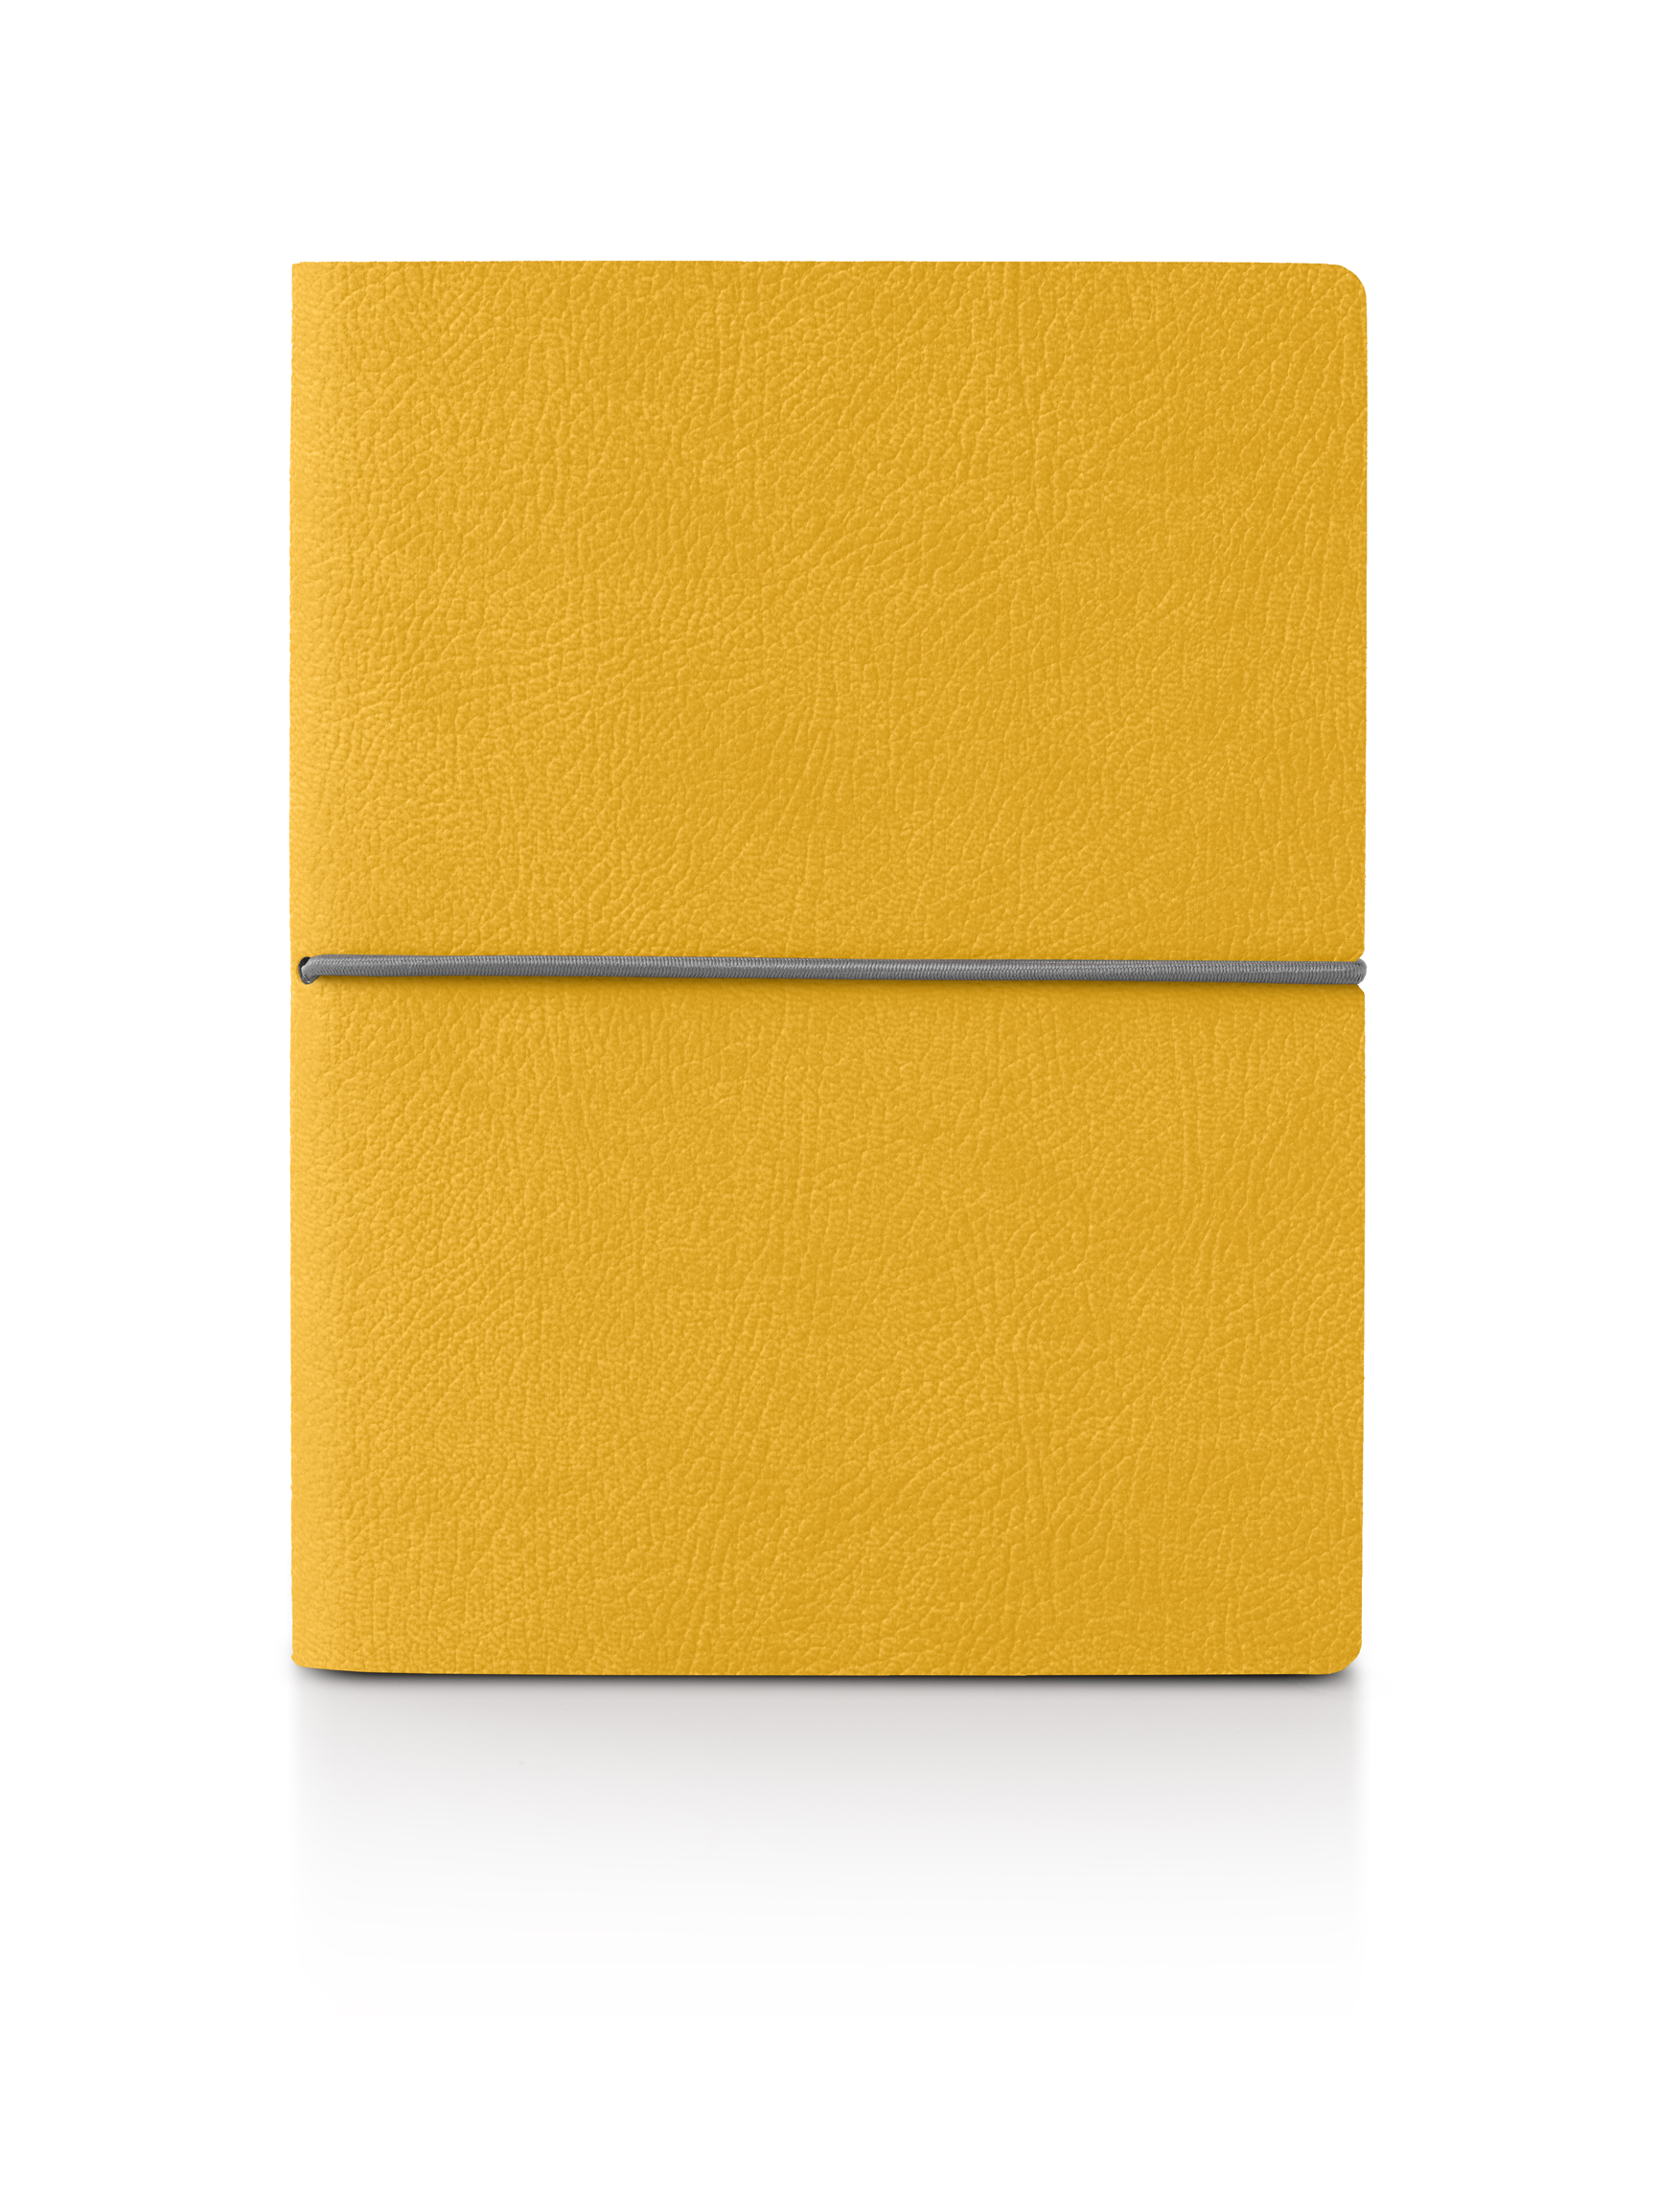 8178CK26 - Ciak SMART Notebook